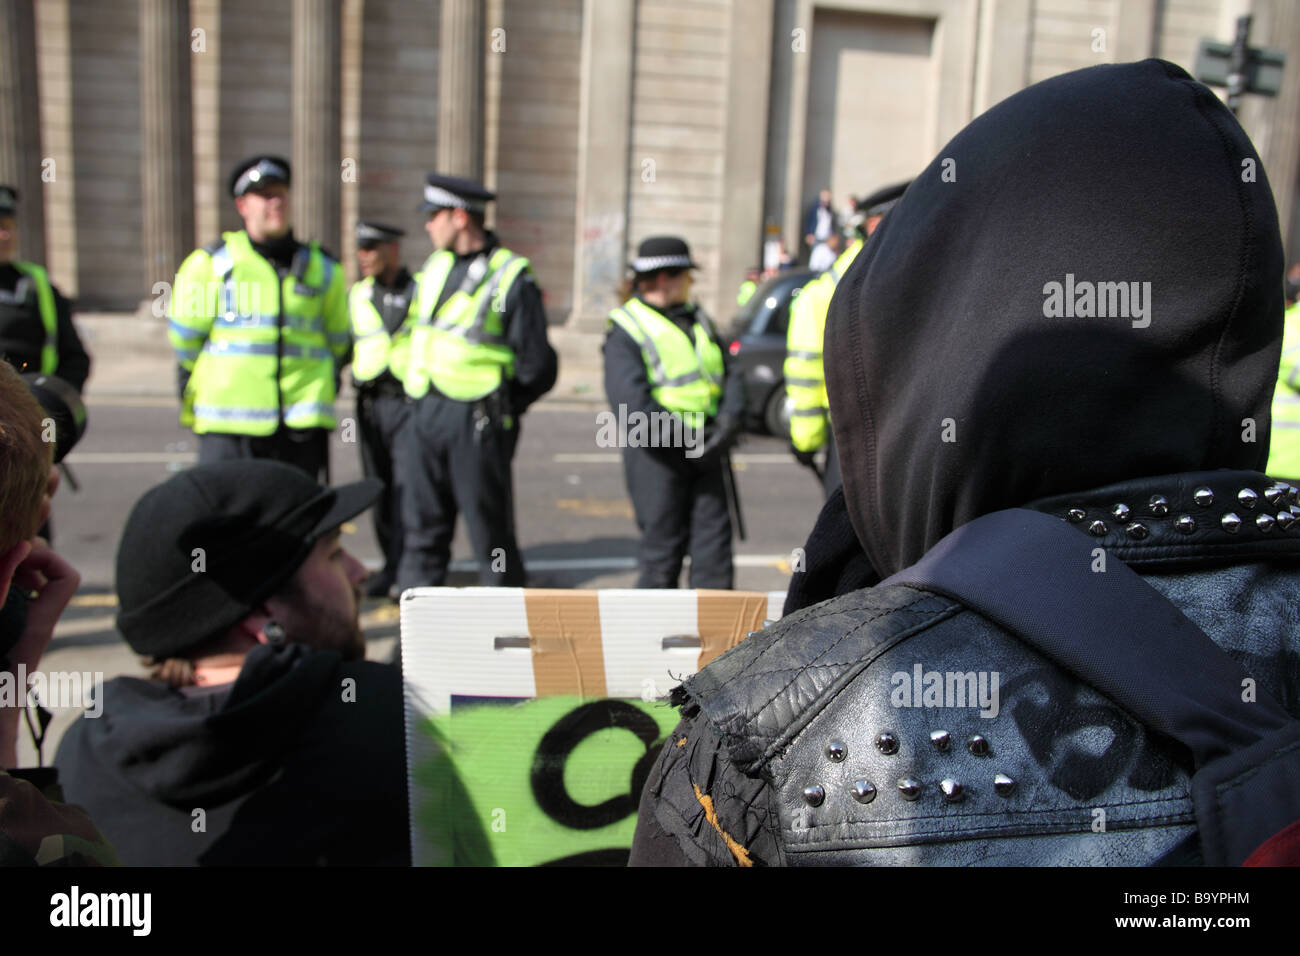 Des manifestants et la police à l'extérieur de la Banque d'Angleterre au cours de la 2009 Sommet du G20, Londres, Royaume-Uni. Banque D'Images